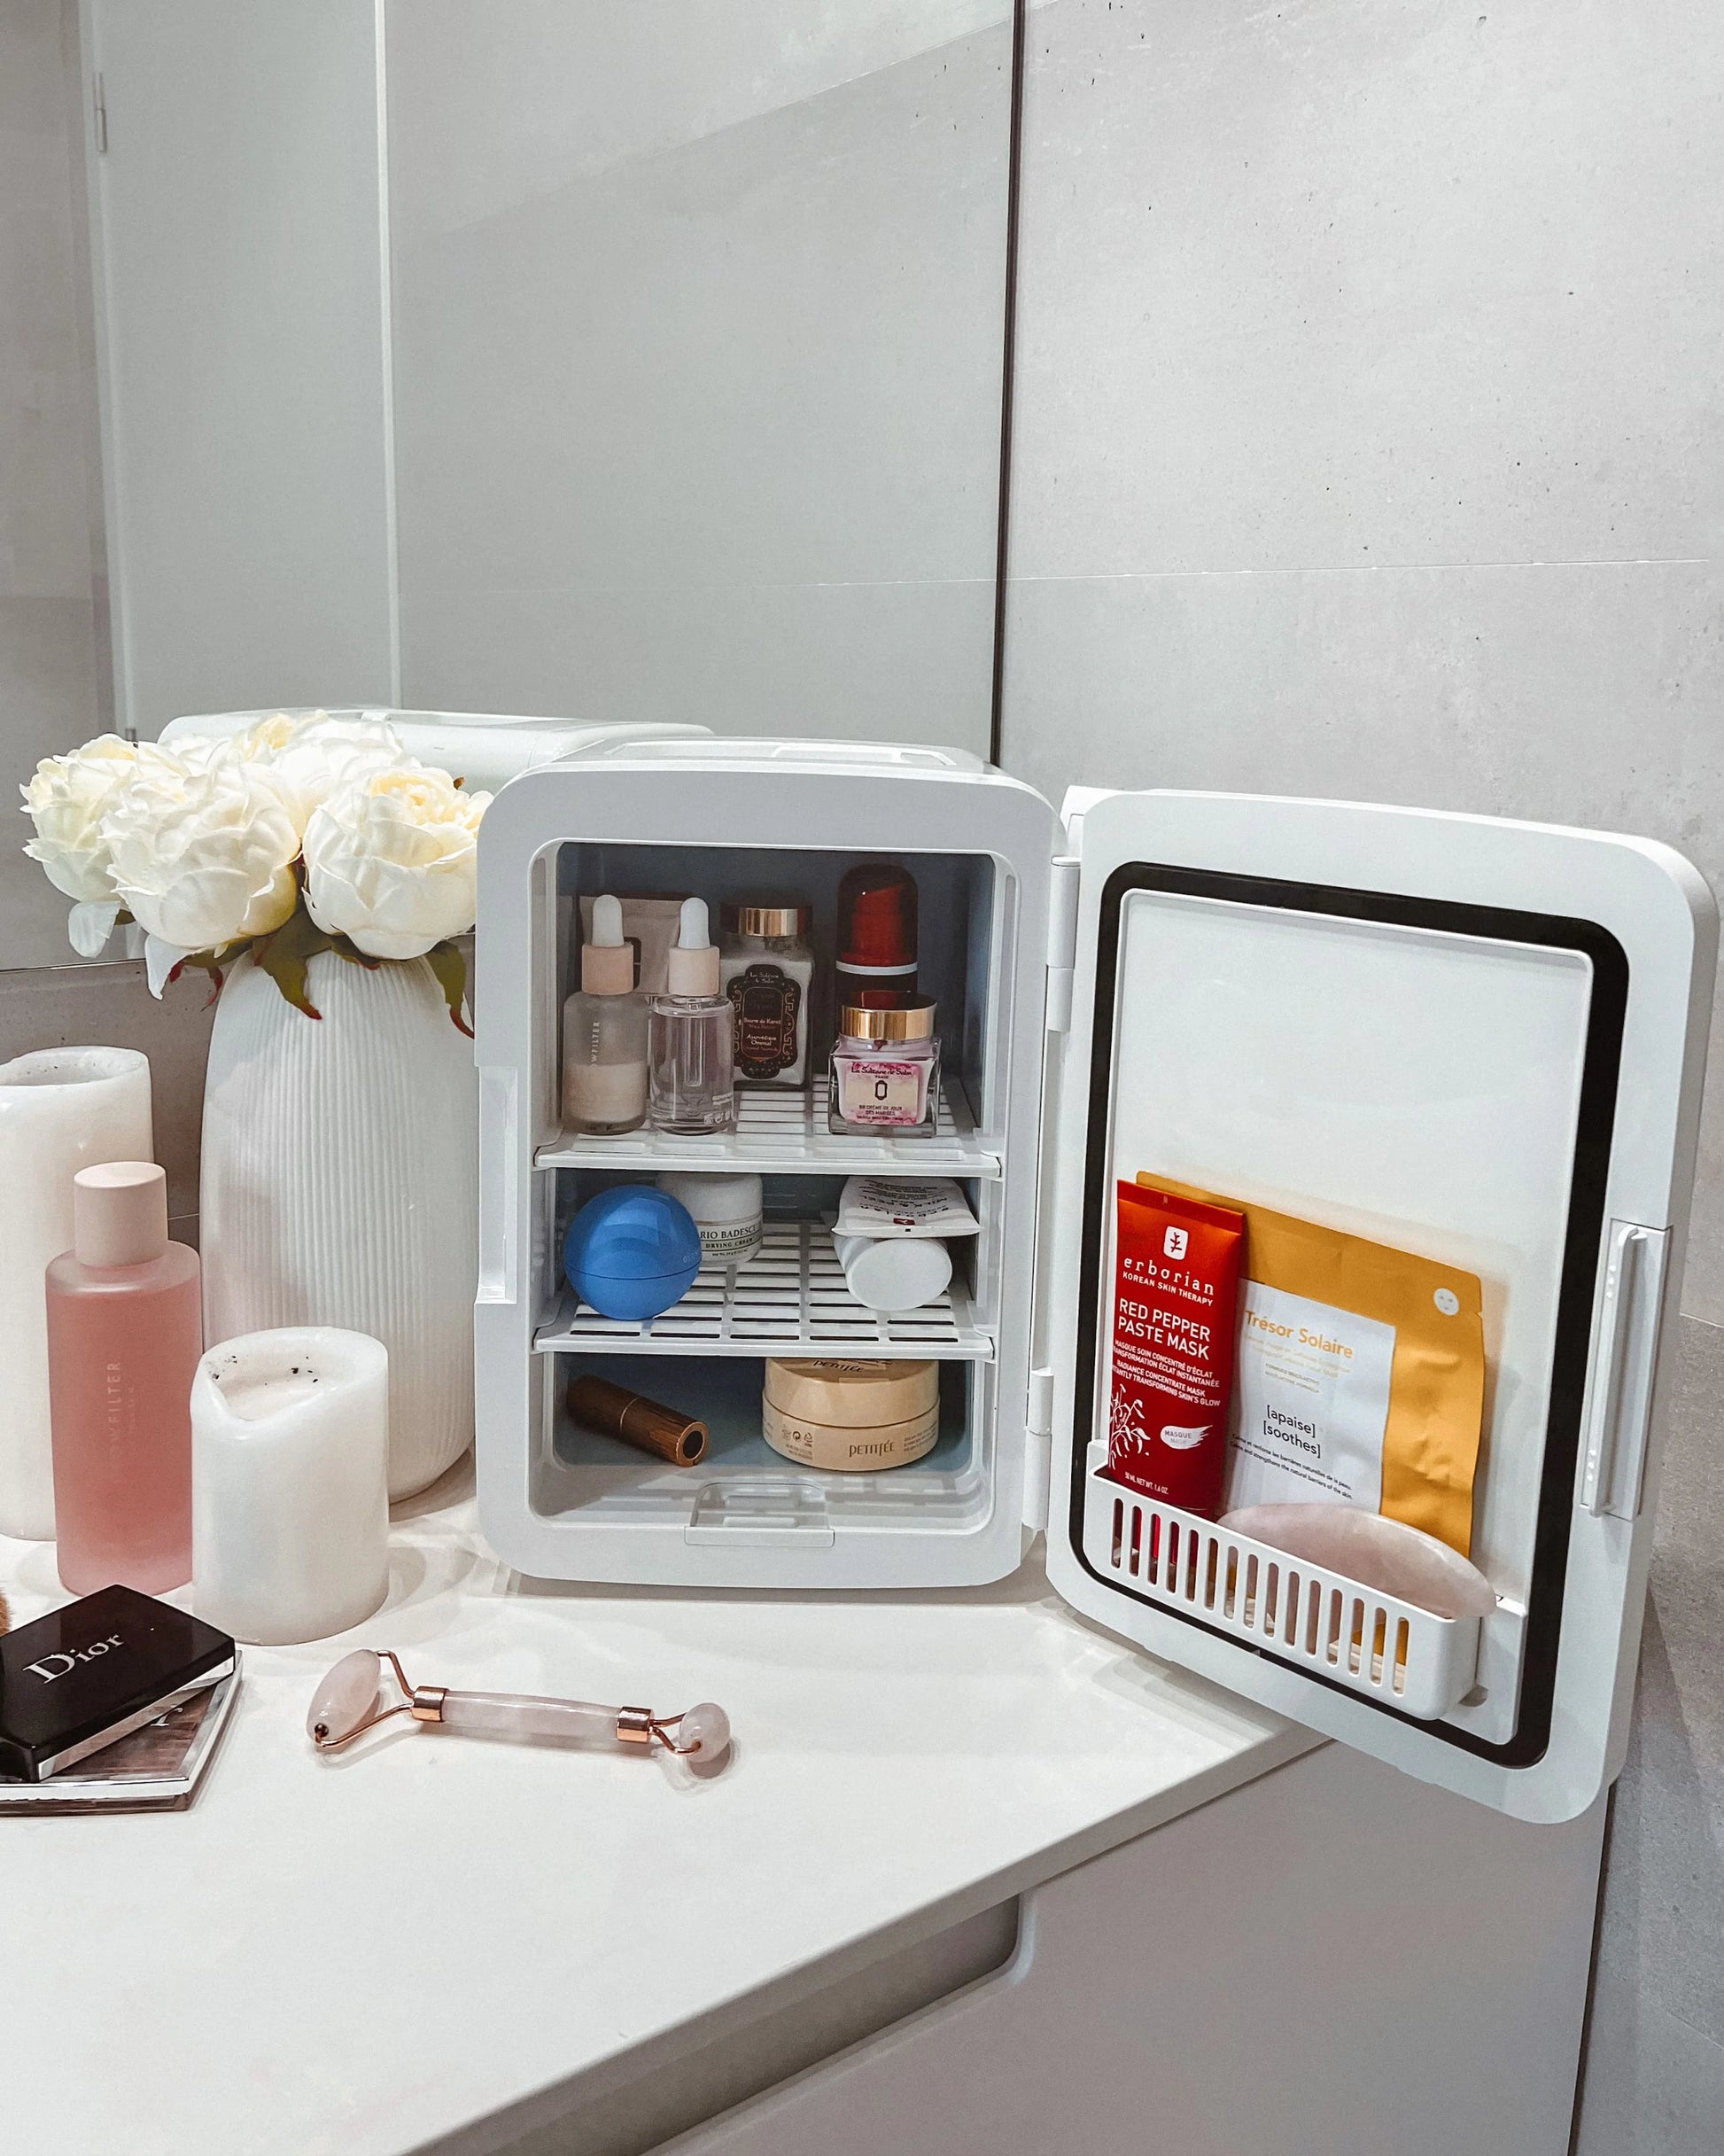 Frigo pour Voiture Pas cher ✓ - Acheter la Mini Réfrigérateur